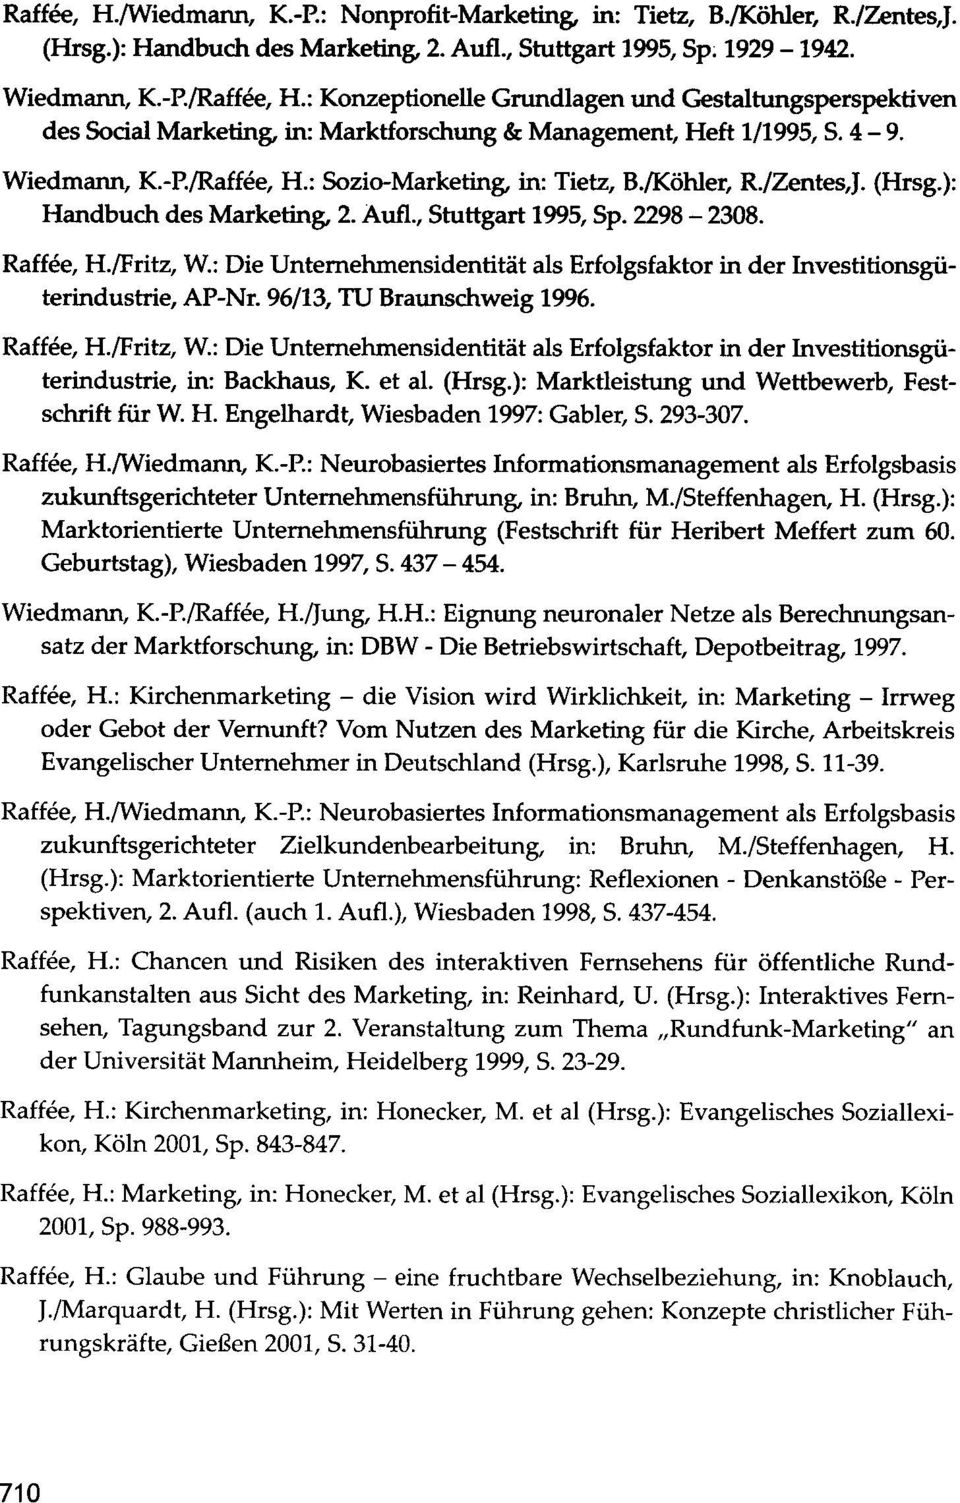 /Zentes,J. (Hrsg.): Handbuch des Marketing, 2. Aufl., Stuttgart 1995, Sp. 2298-2308. Raffee, H./Fritz, W.: Die Unternehmensidentität als Erfolgsfaktor in der Investitionsgüterindustrie, AP-Nr.